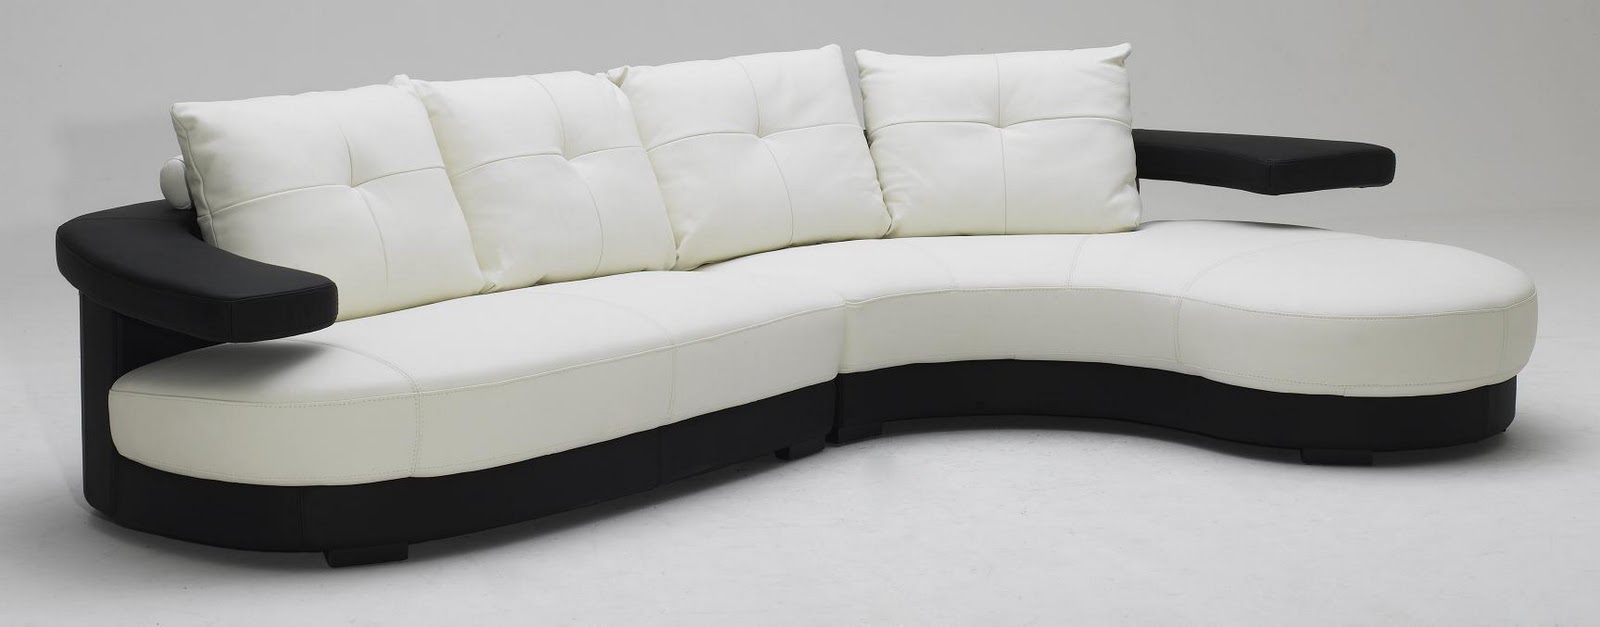 modern design sofa set GWVQTZQ